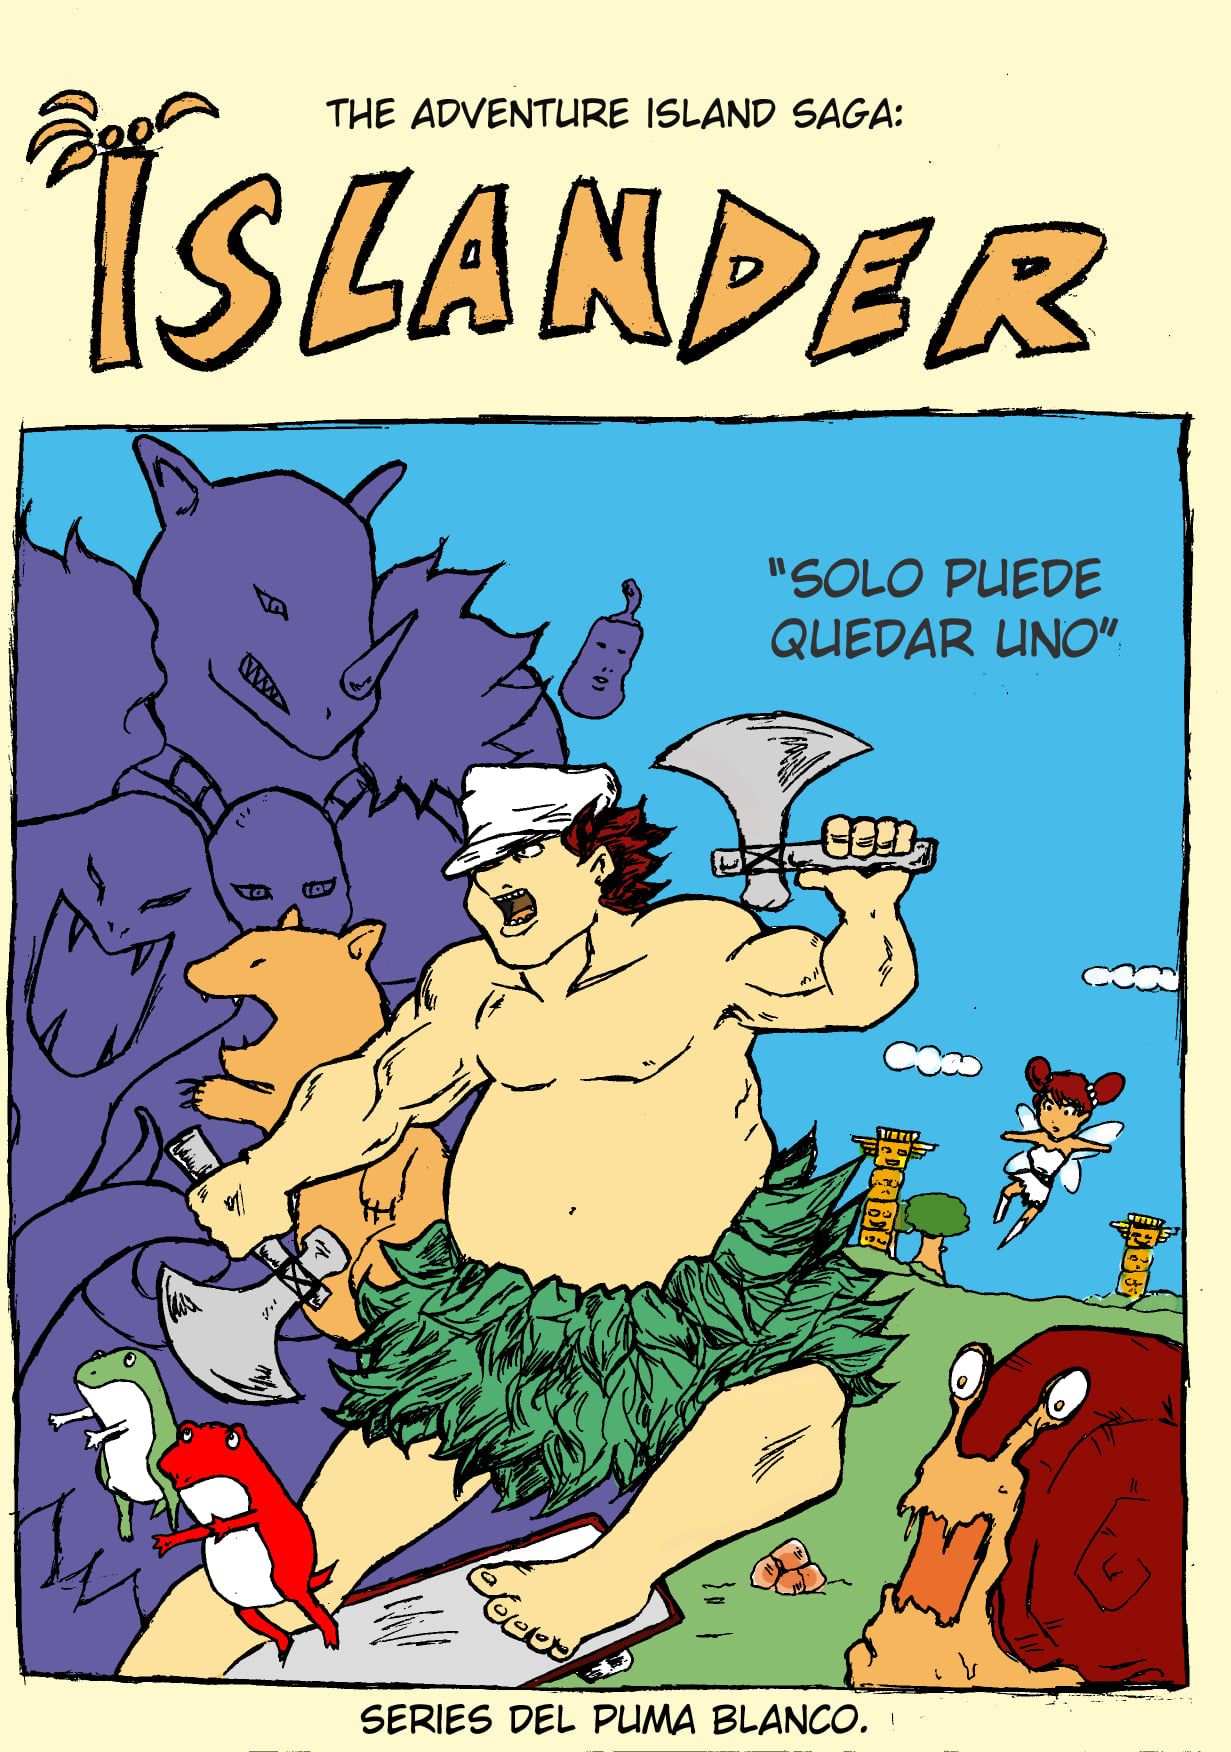 [Series del Puma Banco] The Adventure Island Saga: Islander - Solo puede quedar uno (Adventure Island o Wonder Boy) [Spanish] 1